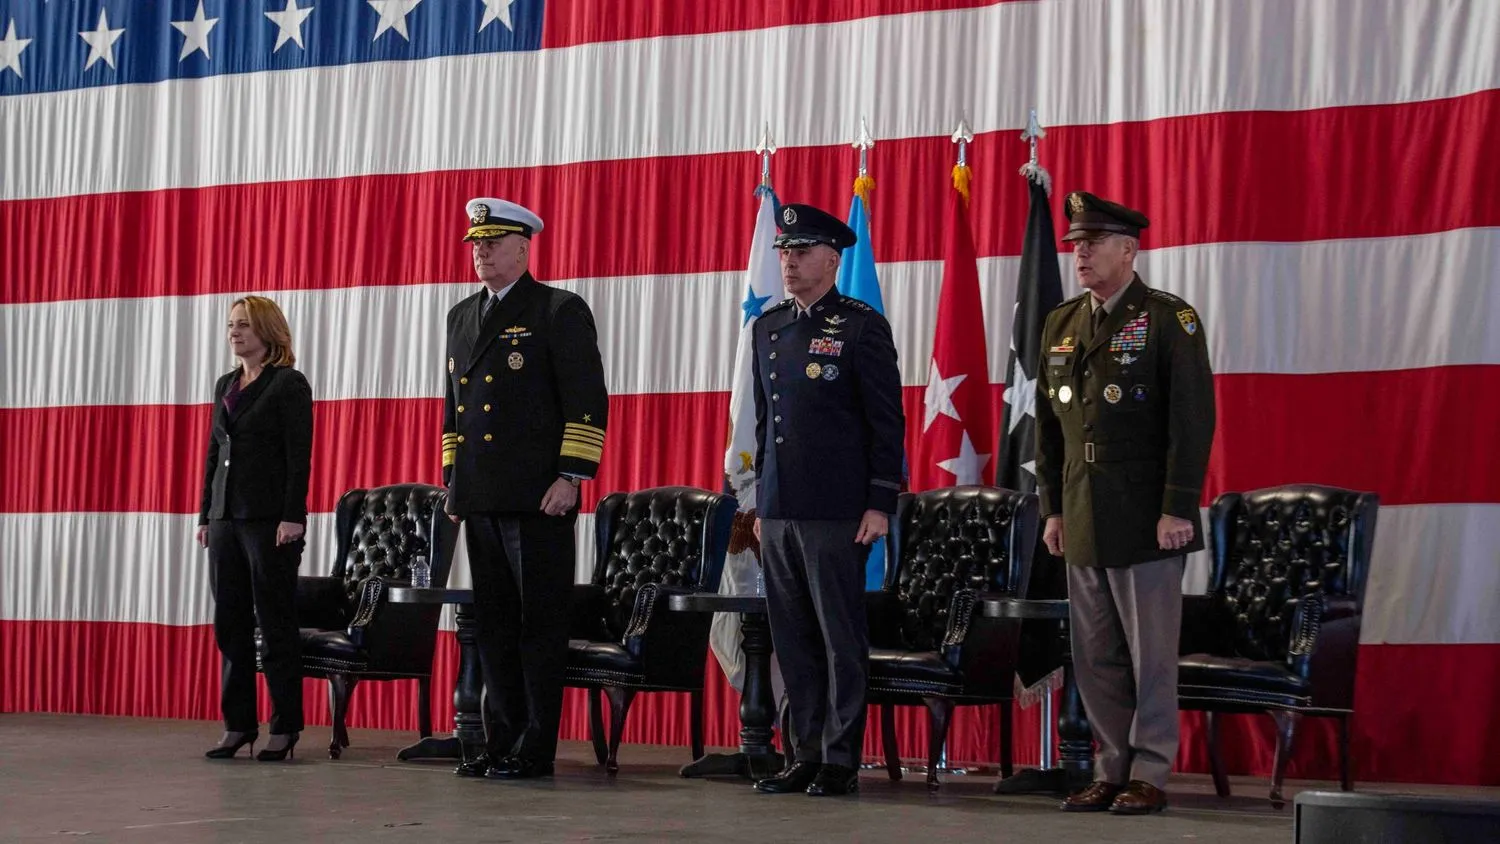 vier Personen, drei davon in US-Militäruniformen, stehen vor einer amerikanischen Flagge